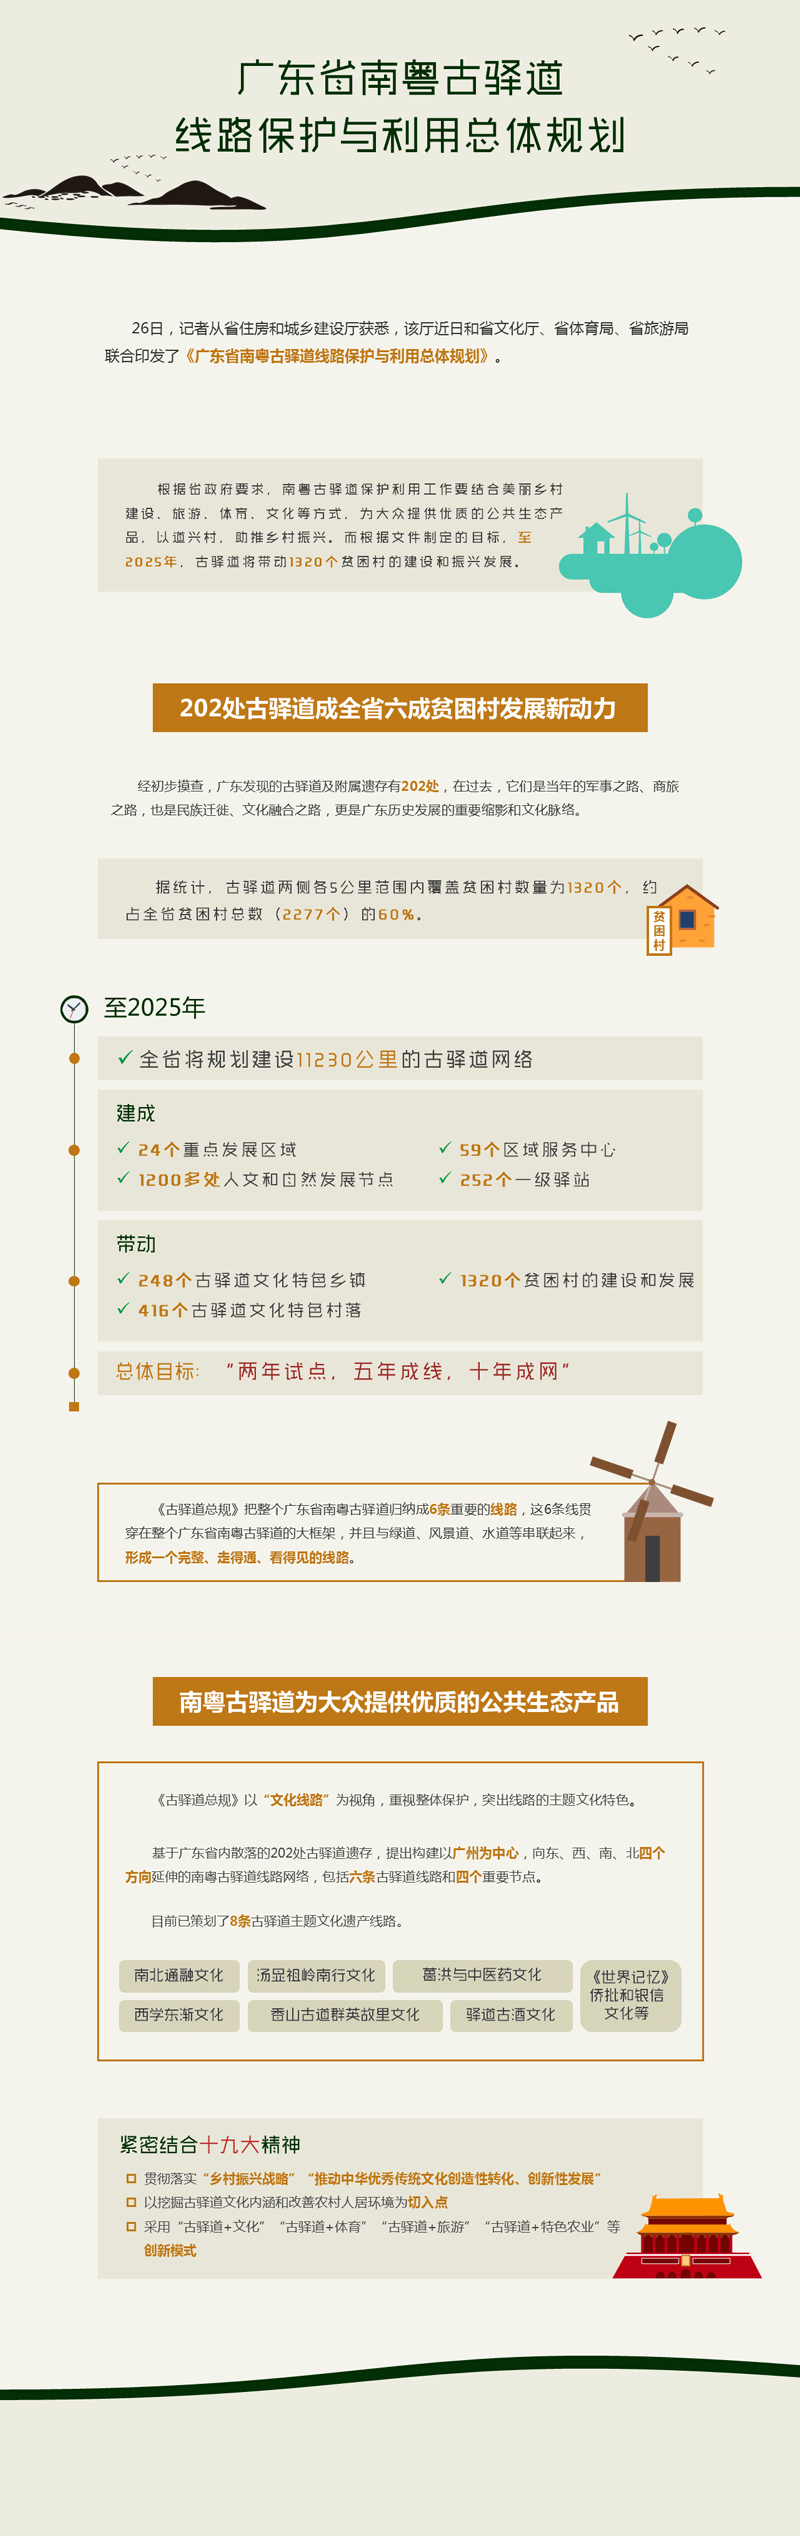 《广东省南粤古驿道线路保护与利用总体规划》正式印发